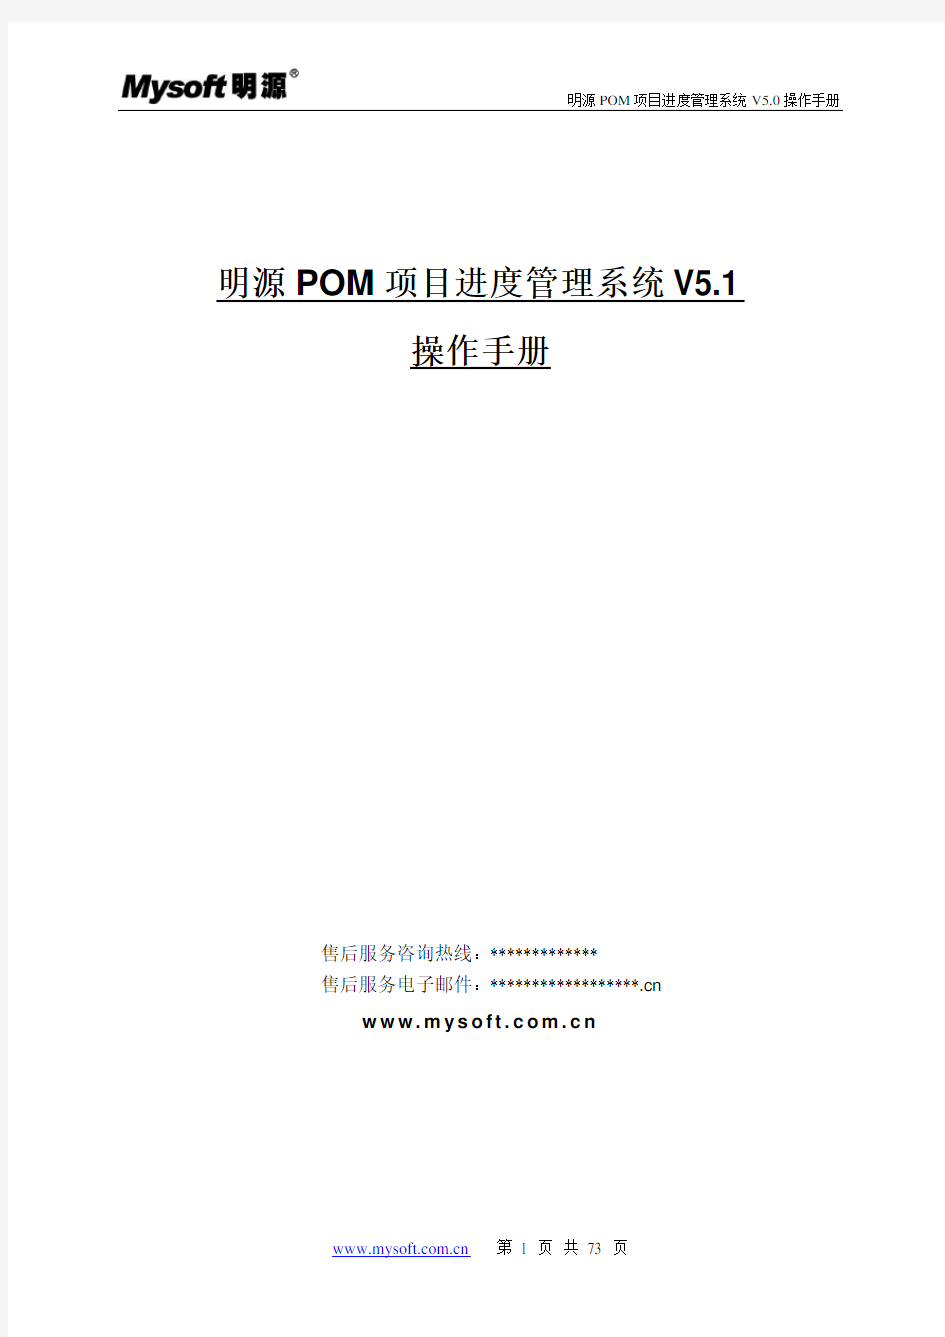 明源POM项目进度管理系统操作手册